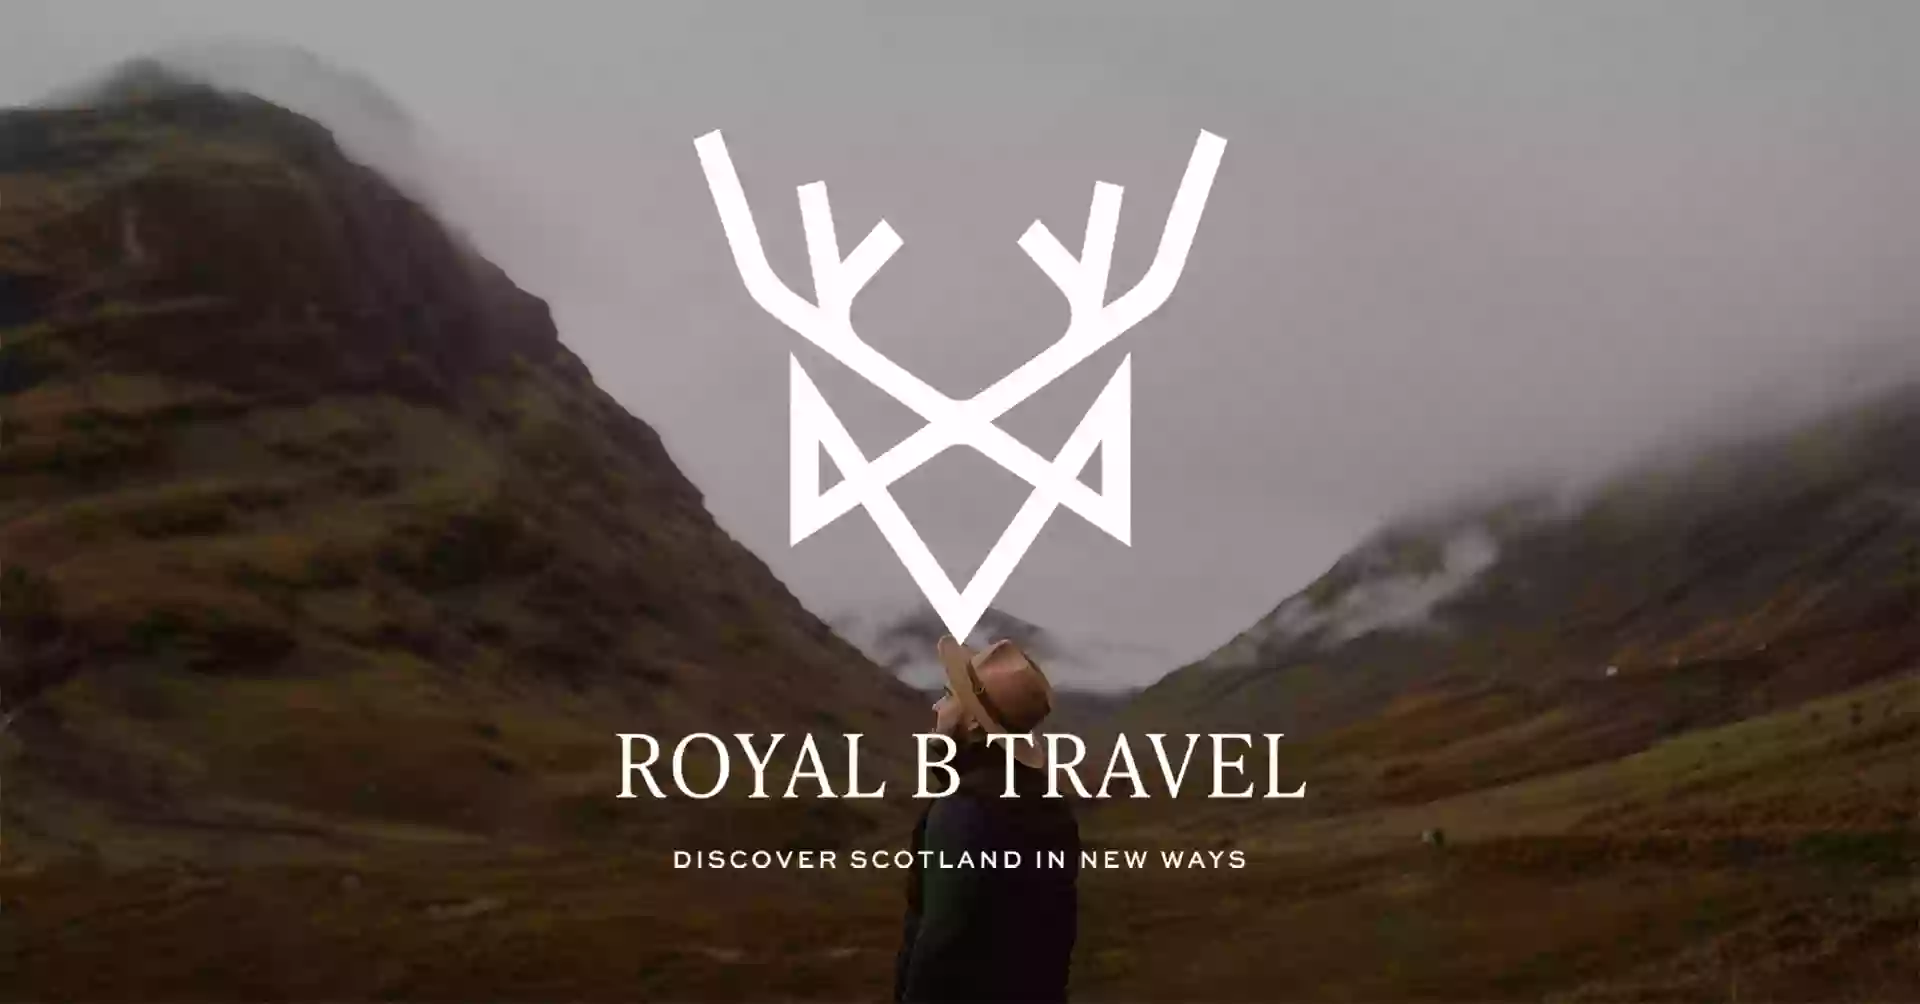 Royal B Travel